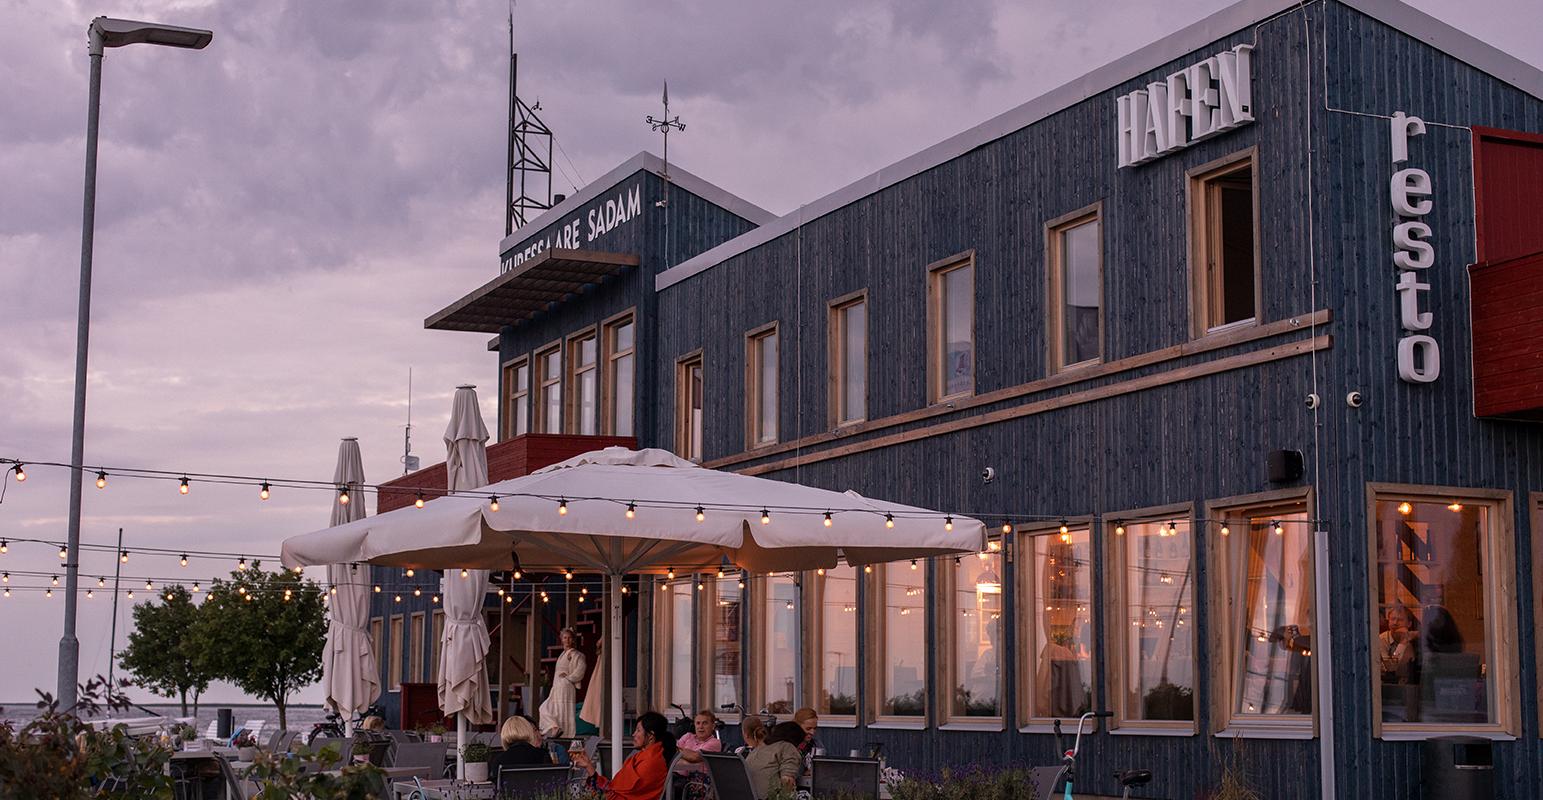 Restaurant Hafen